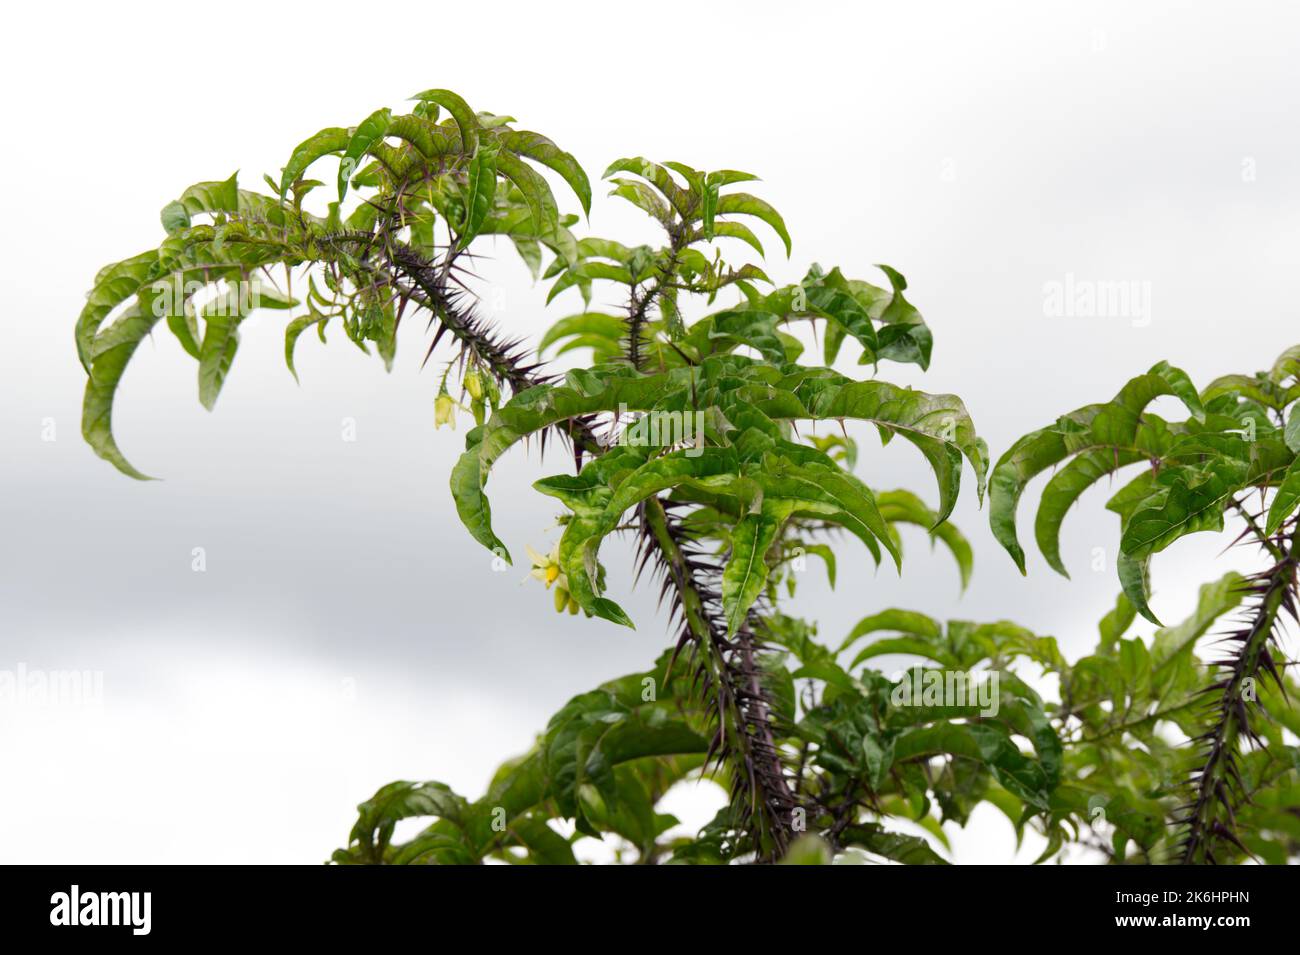 Sommerblumen, wenn spurig, architektonische Pflanze Solanum atropurpurem ganzjährig aus Brasilien im britischen Garten Juli Stockfoto